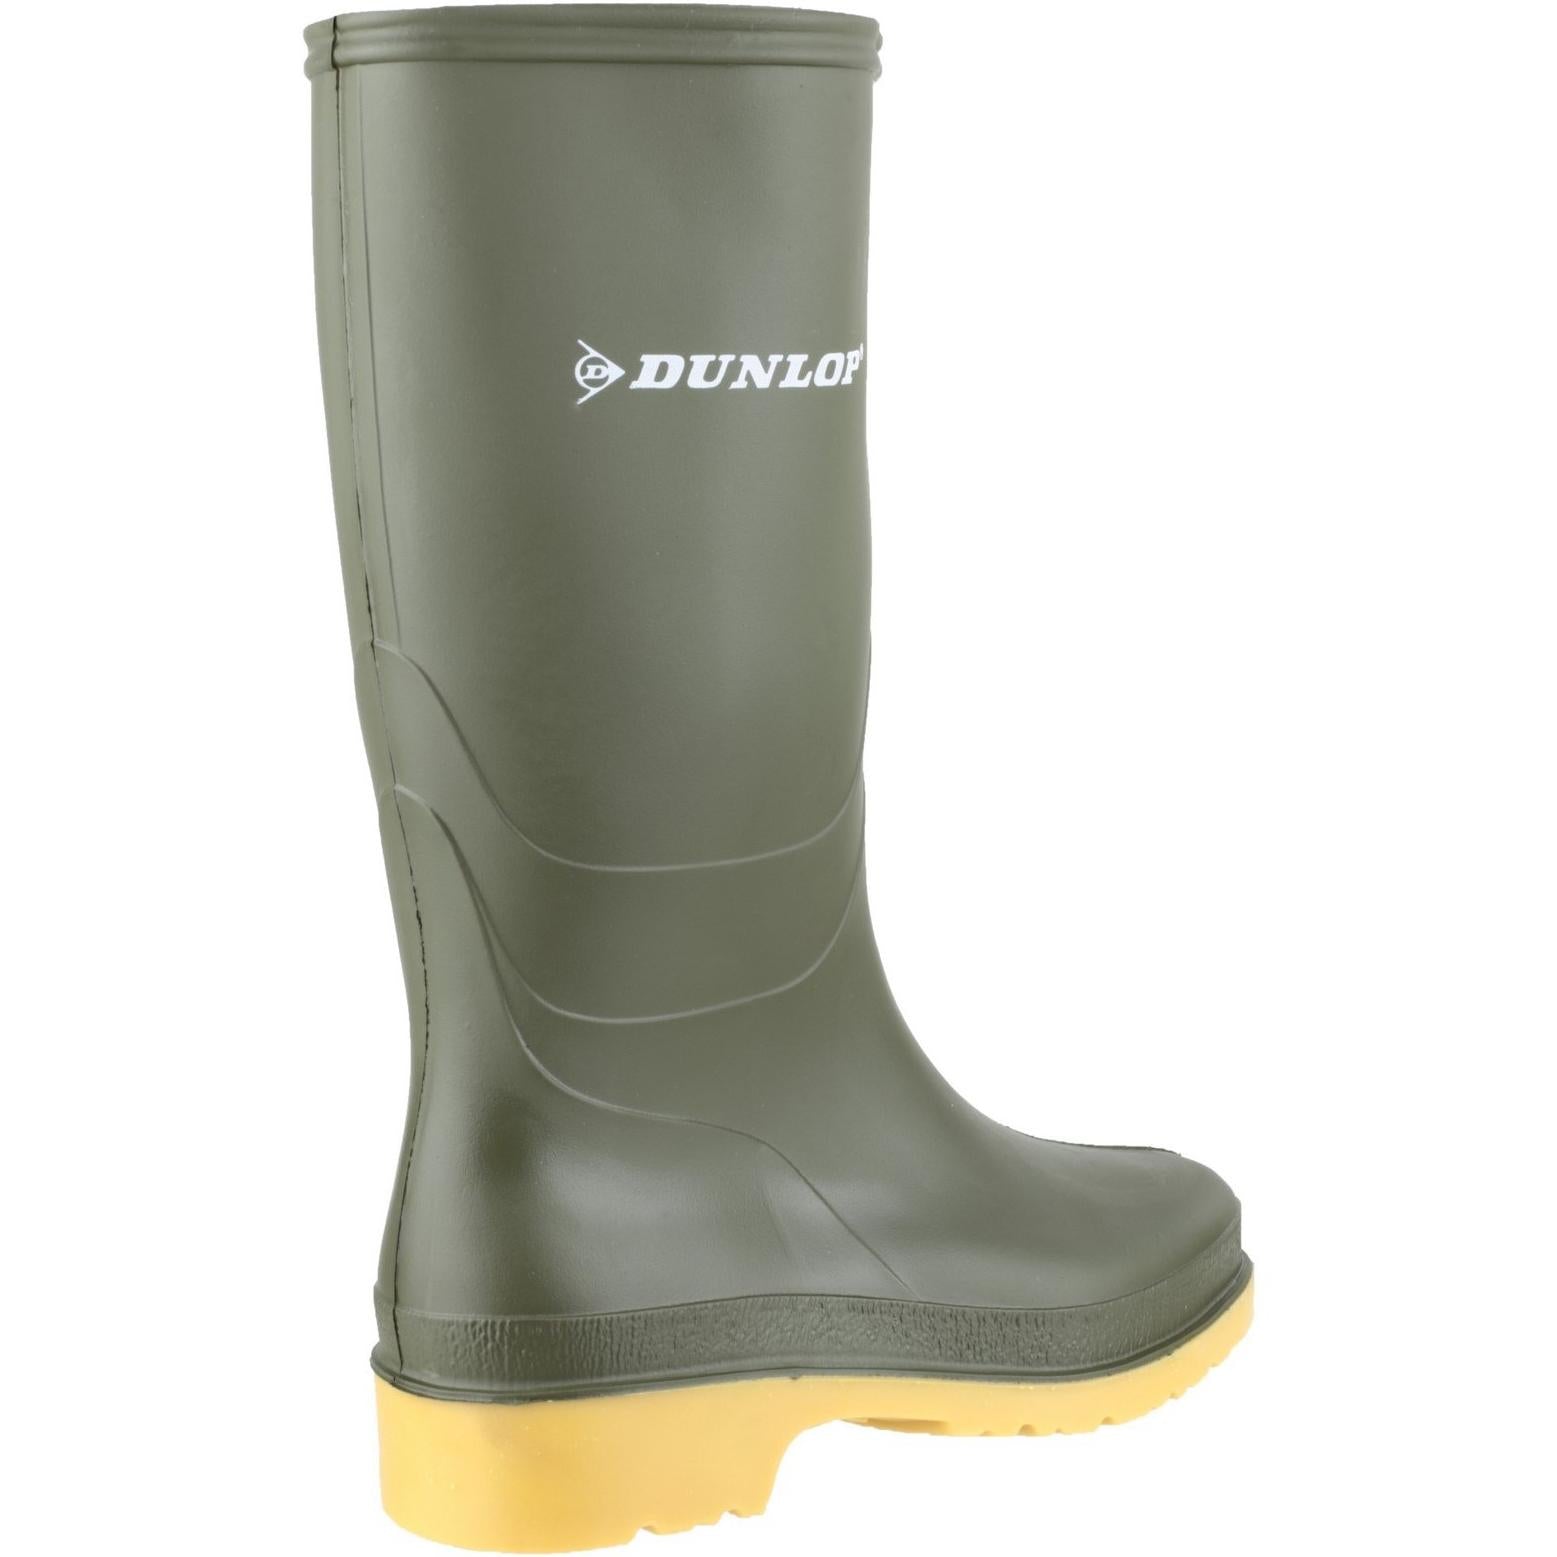 Dunlop Dulls Wellington Boot